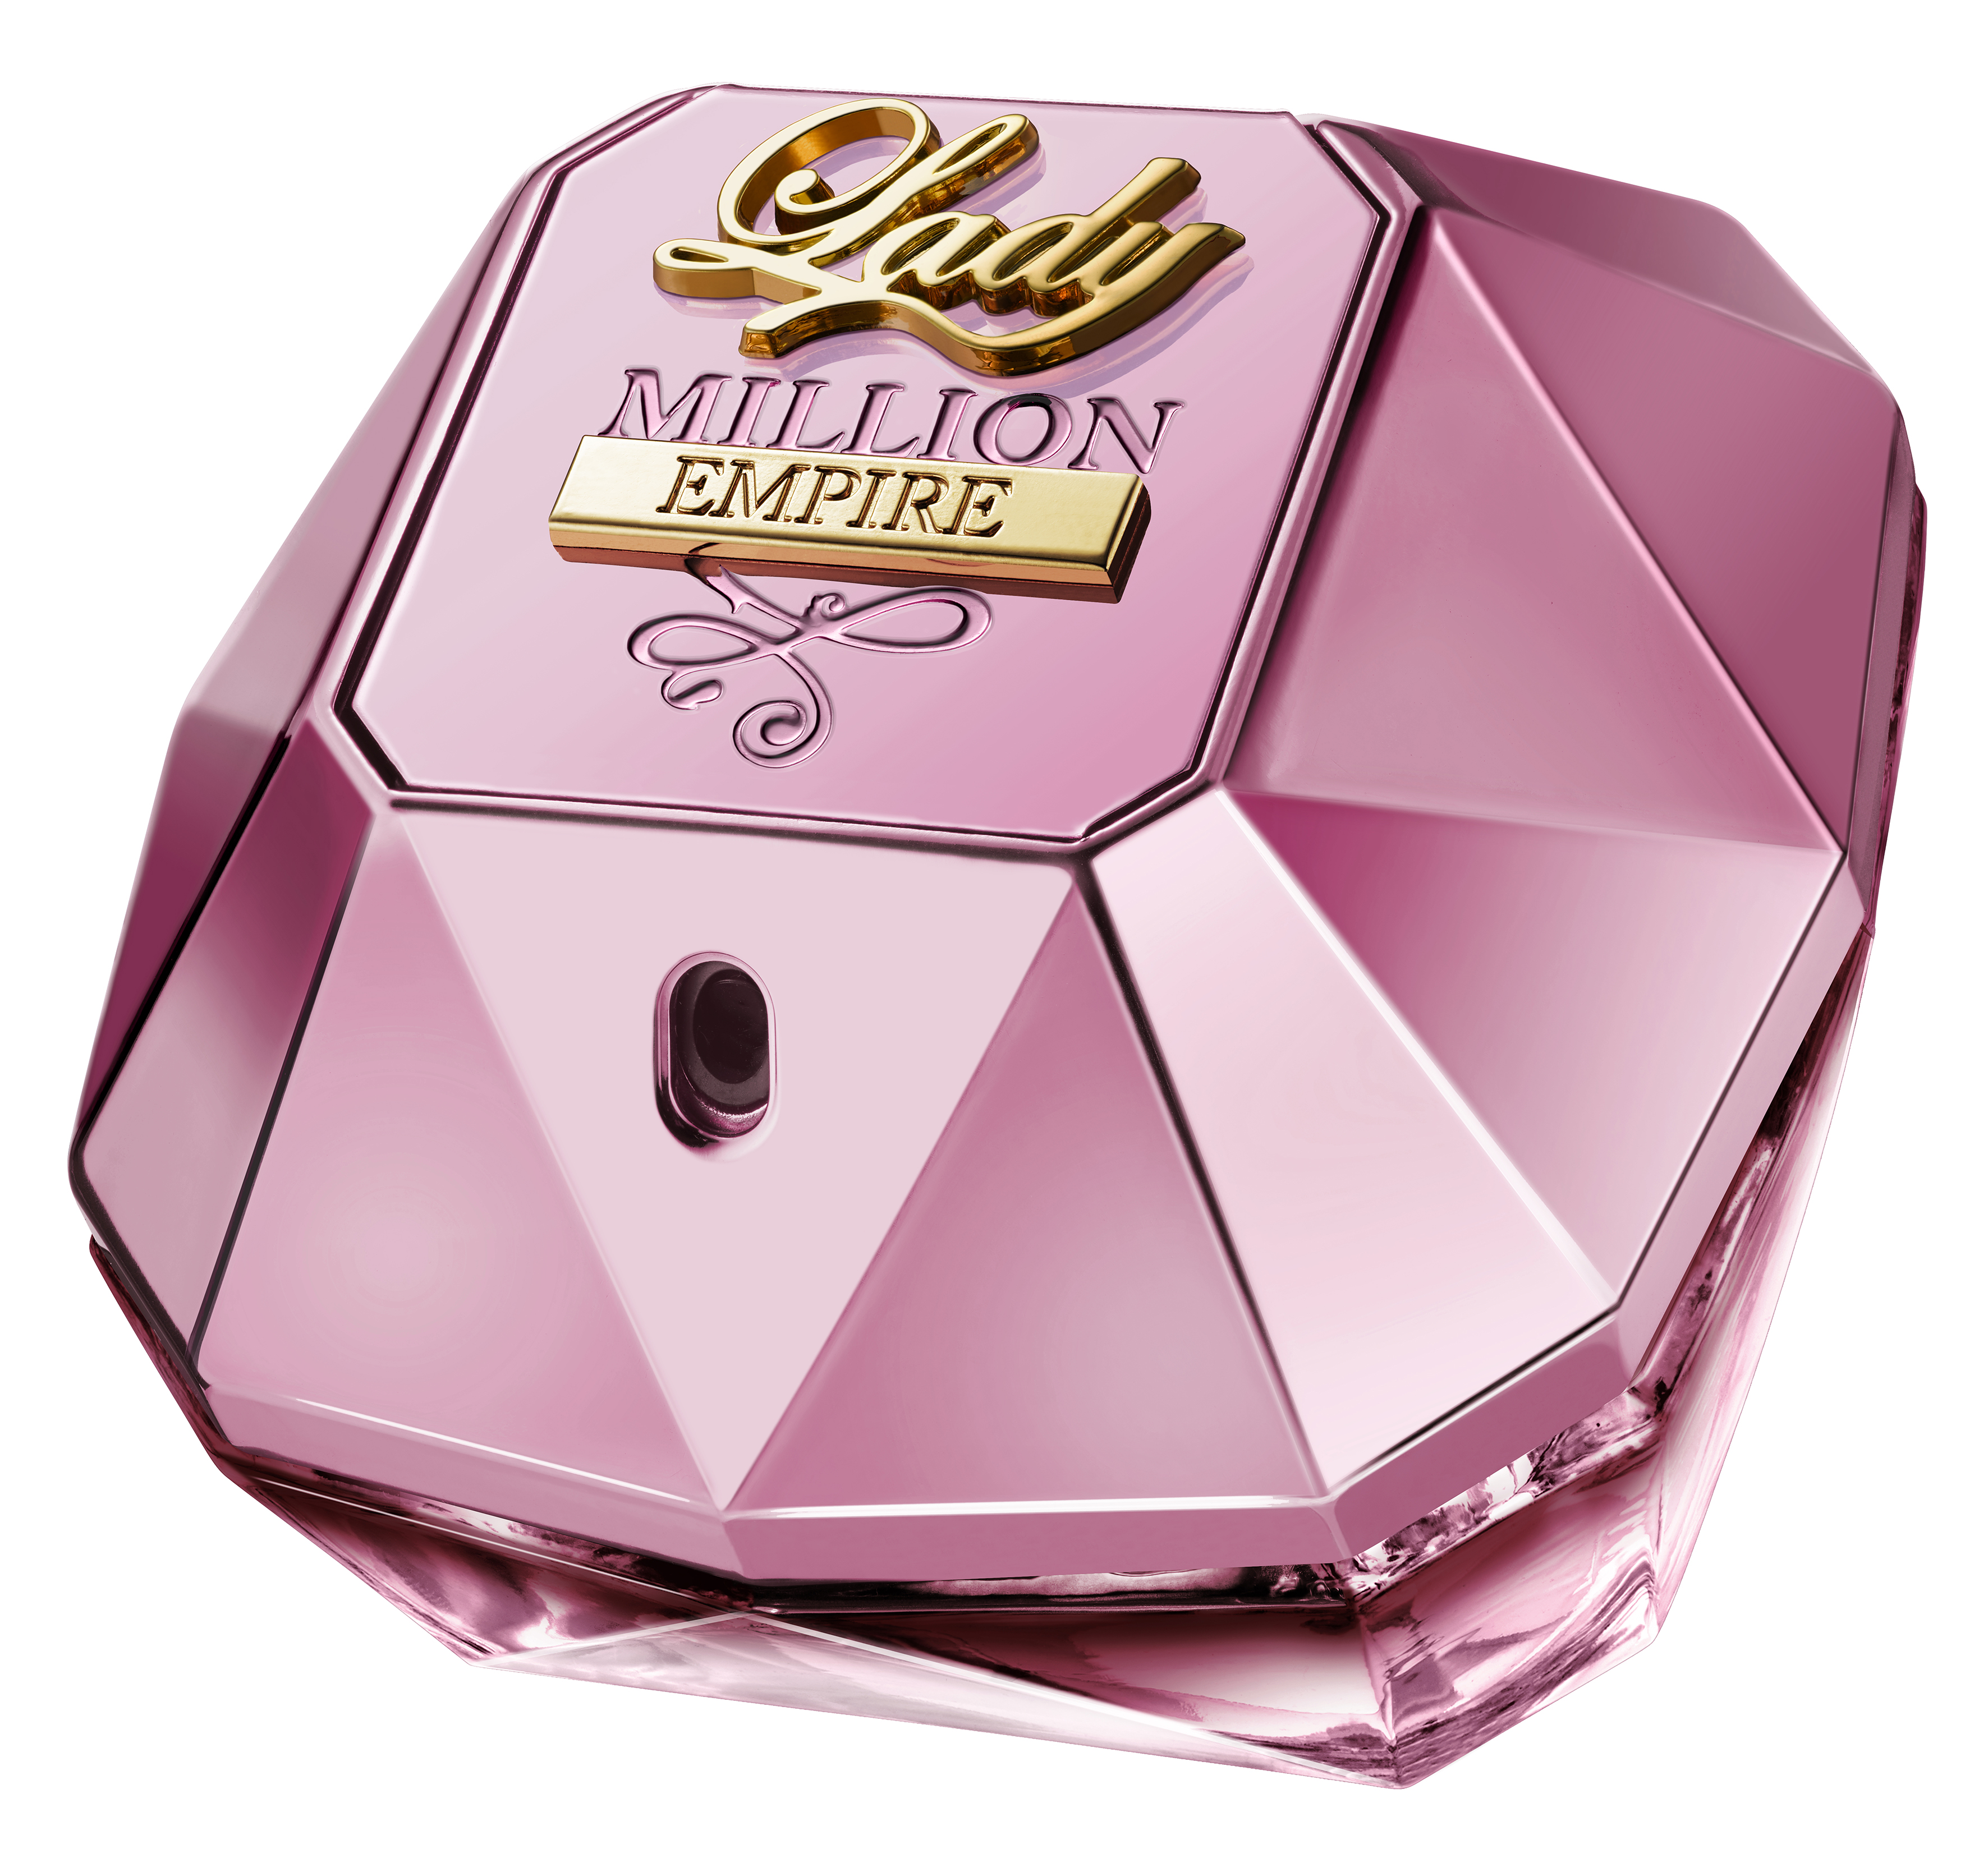 Parfum Lady Million - Homecare24